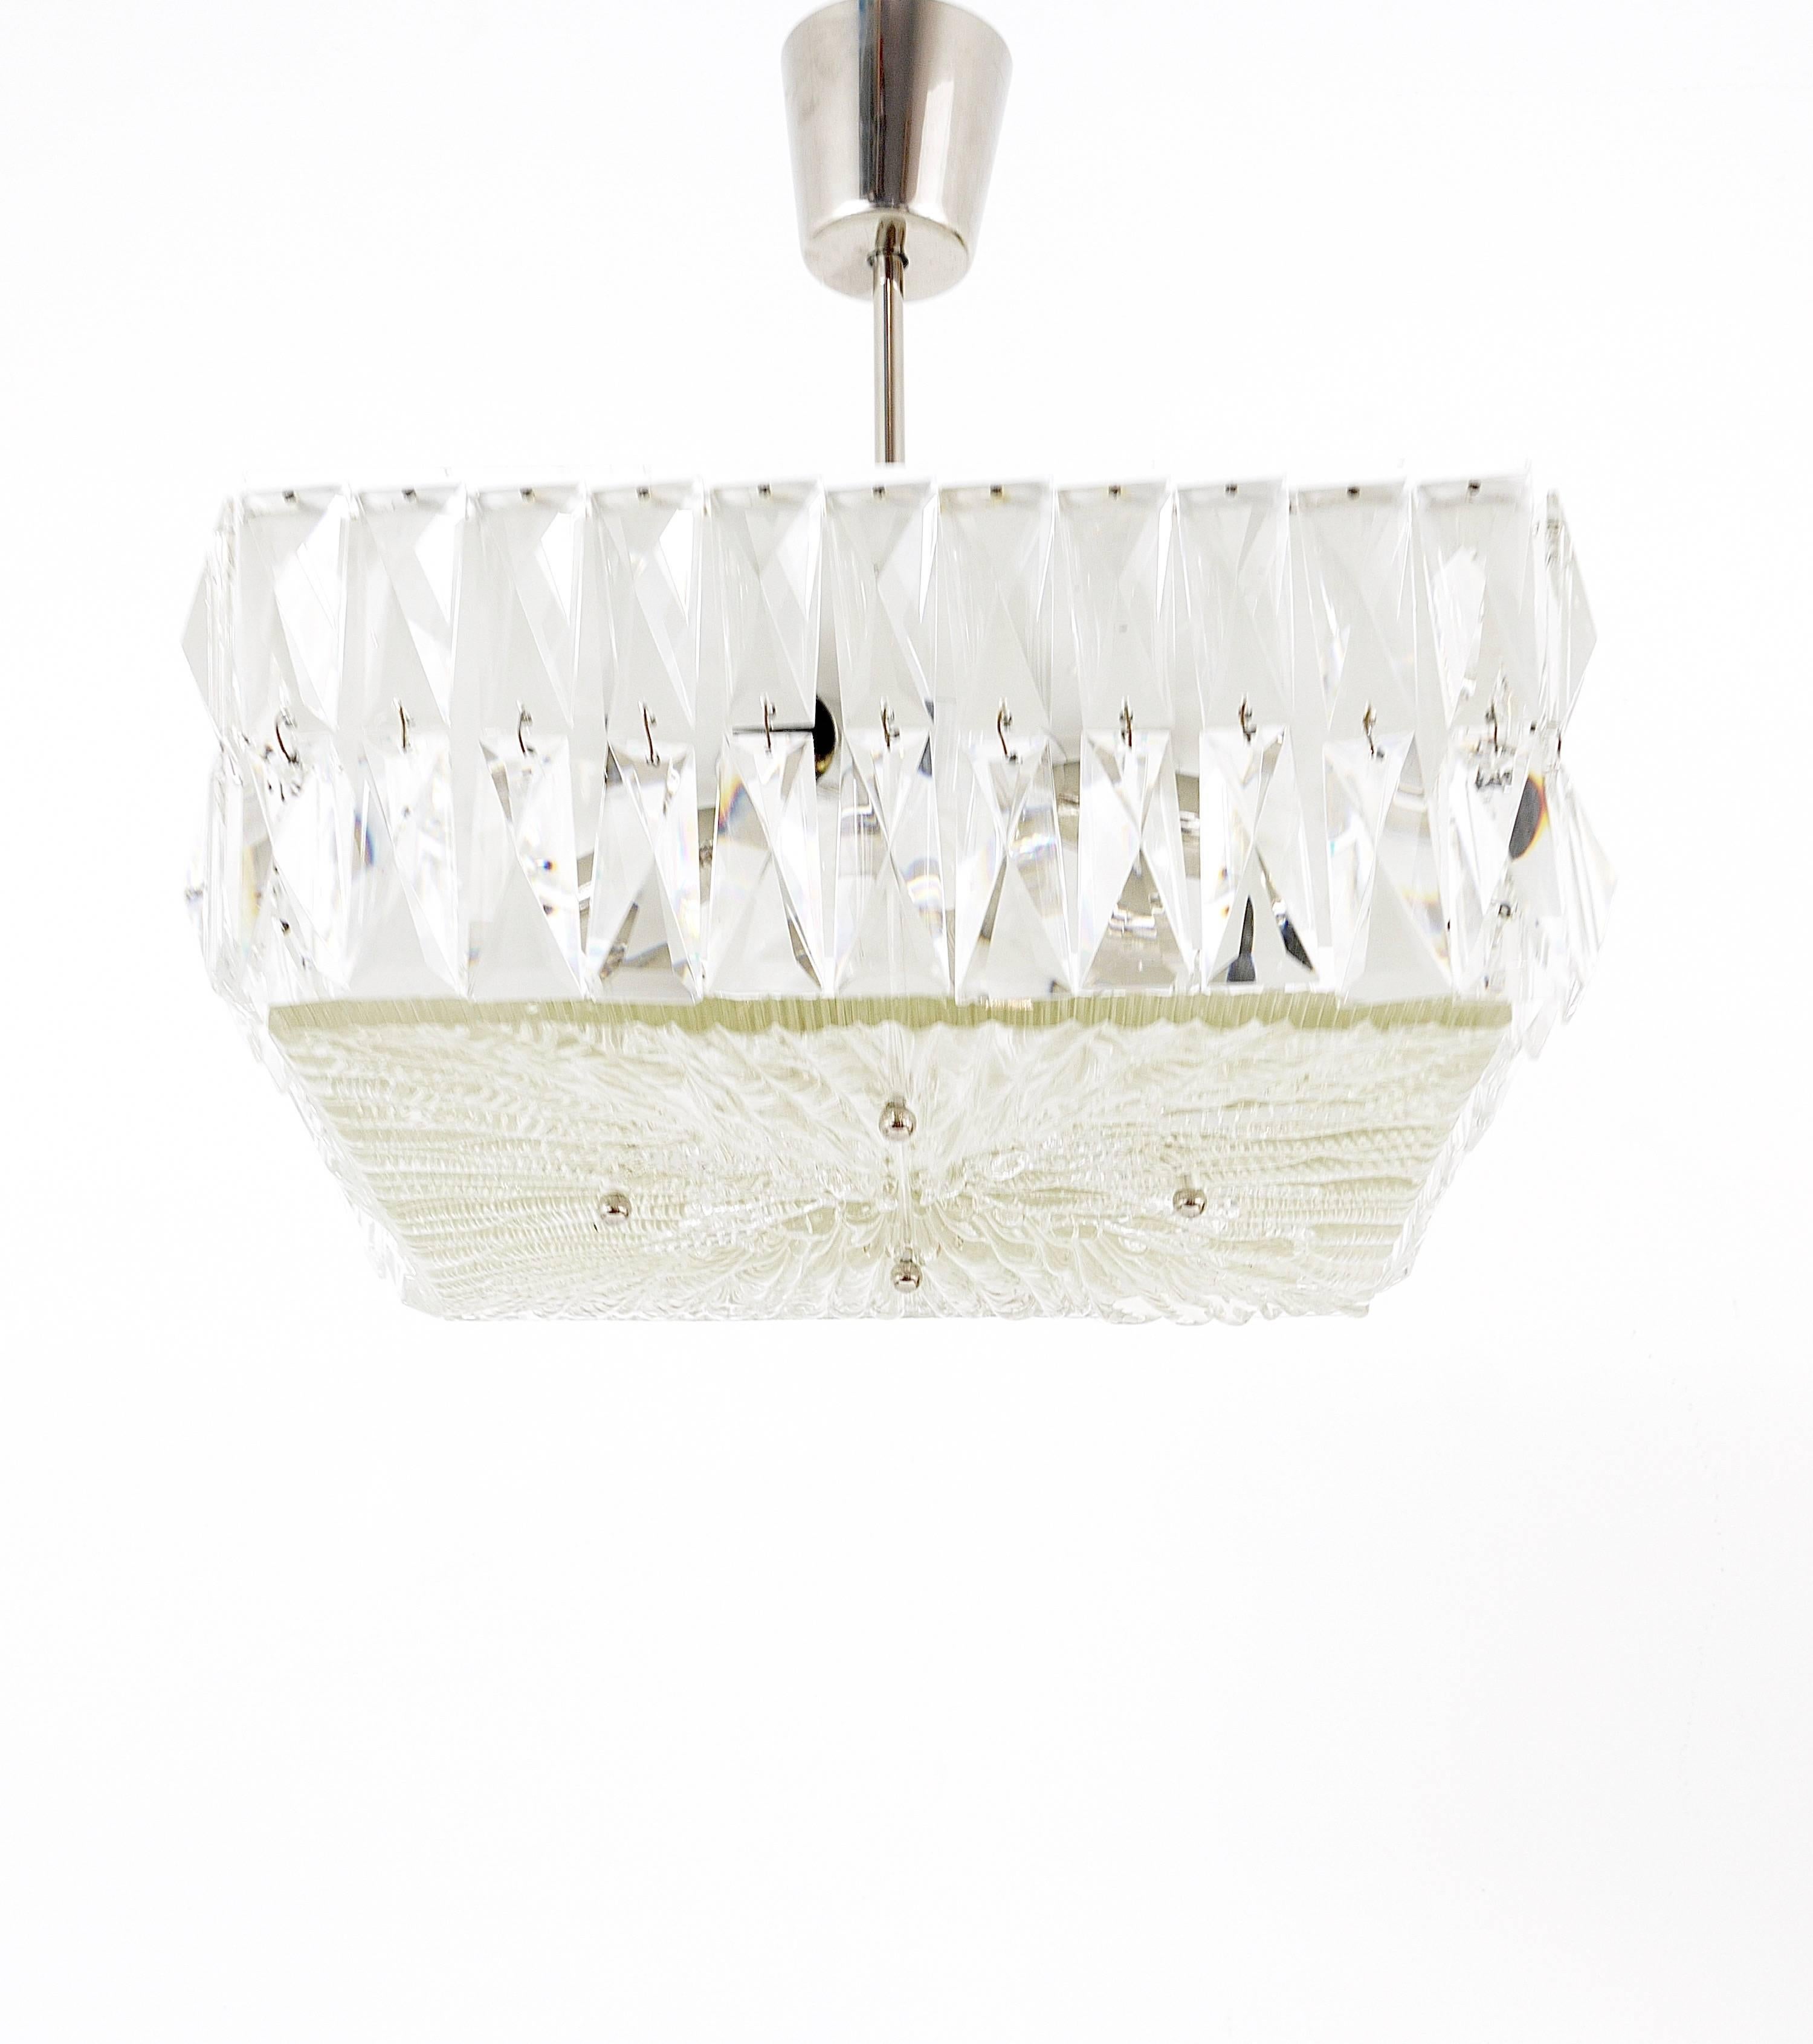 Lampe suspendue carrée du milieu du siècle dernier des années 1960, fabriquée à la main par Bakalowits Vienna en Autriche. Une belle pièce, une quincaillerie en métal blanc et nickelé entourée de deux rangées de cristaux carrés à facettes. L'ajout